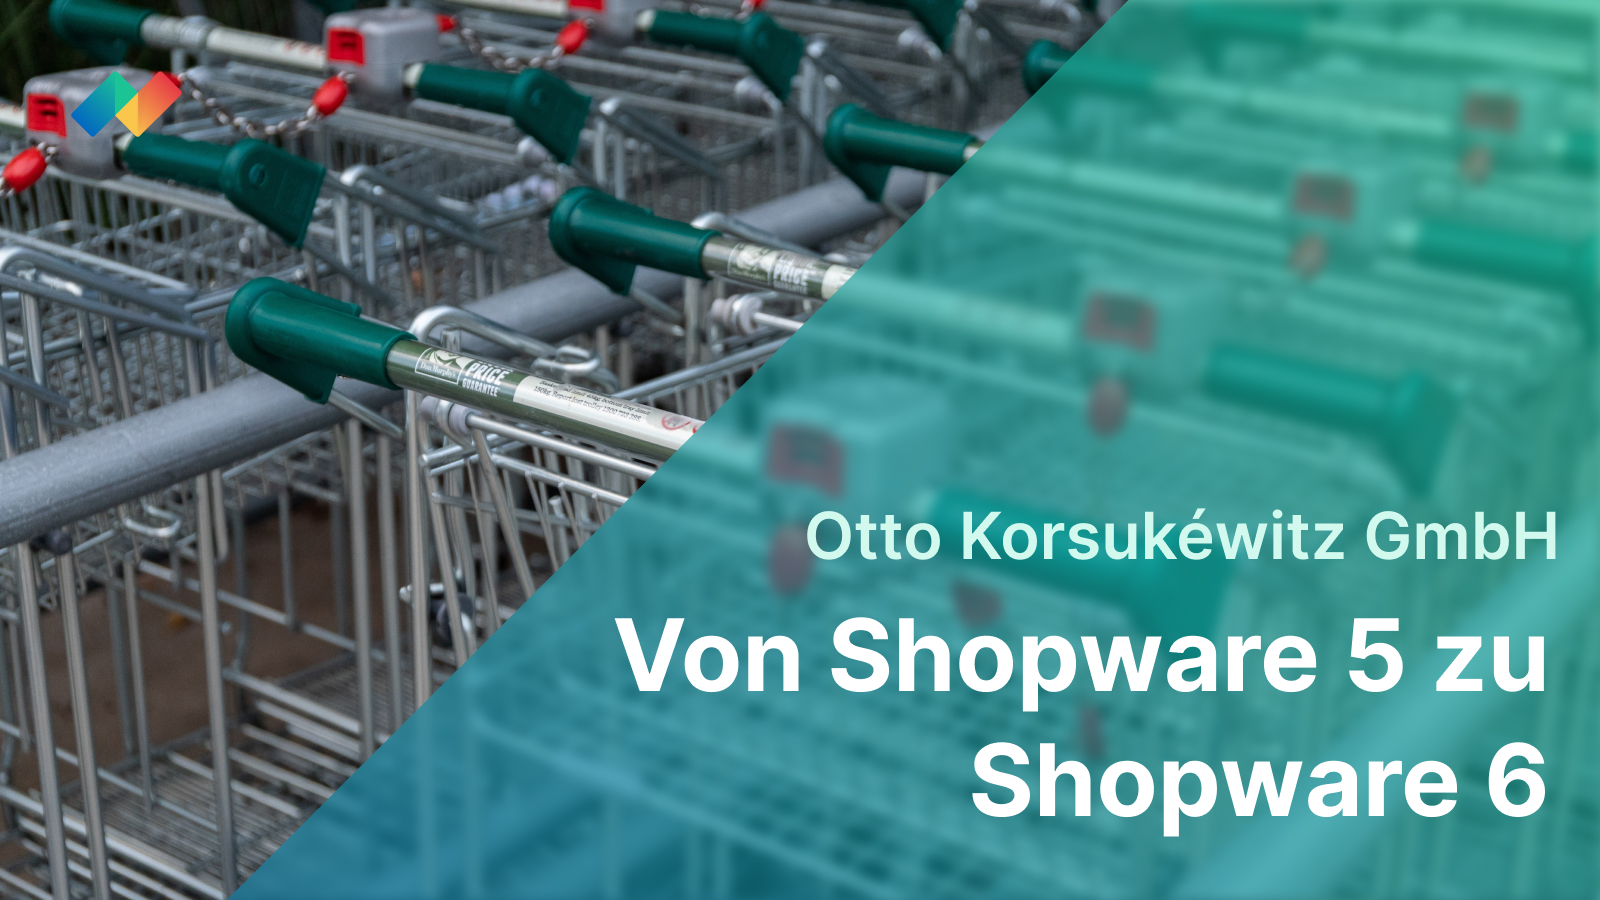 Migration von Shopware 5 zu Shopware 6 für die Otto Korsukéwitz GmbH